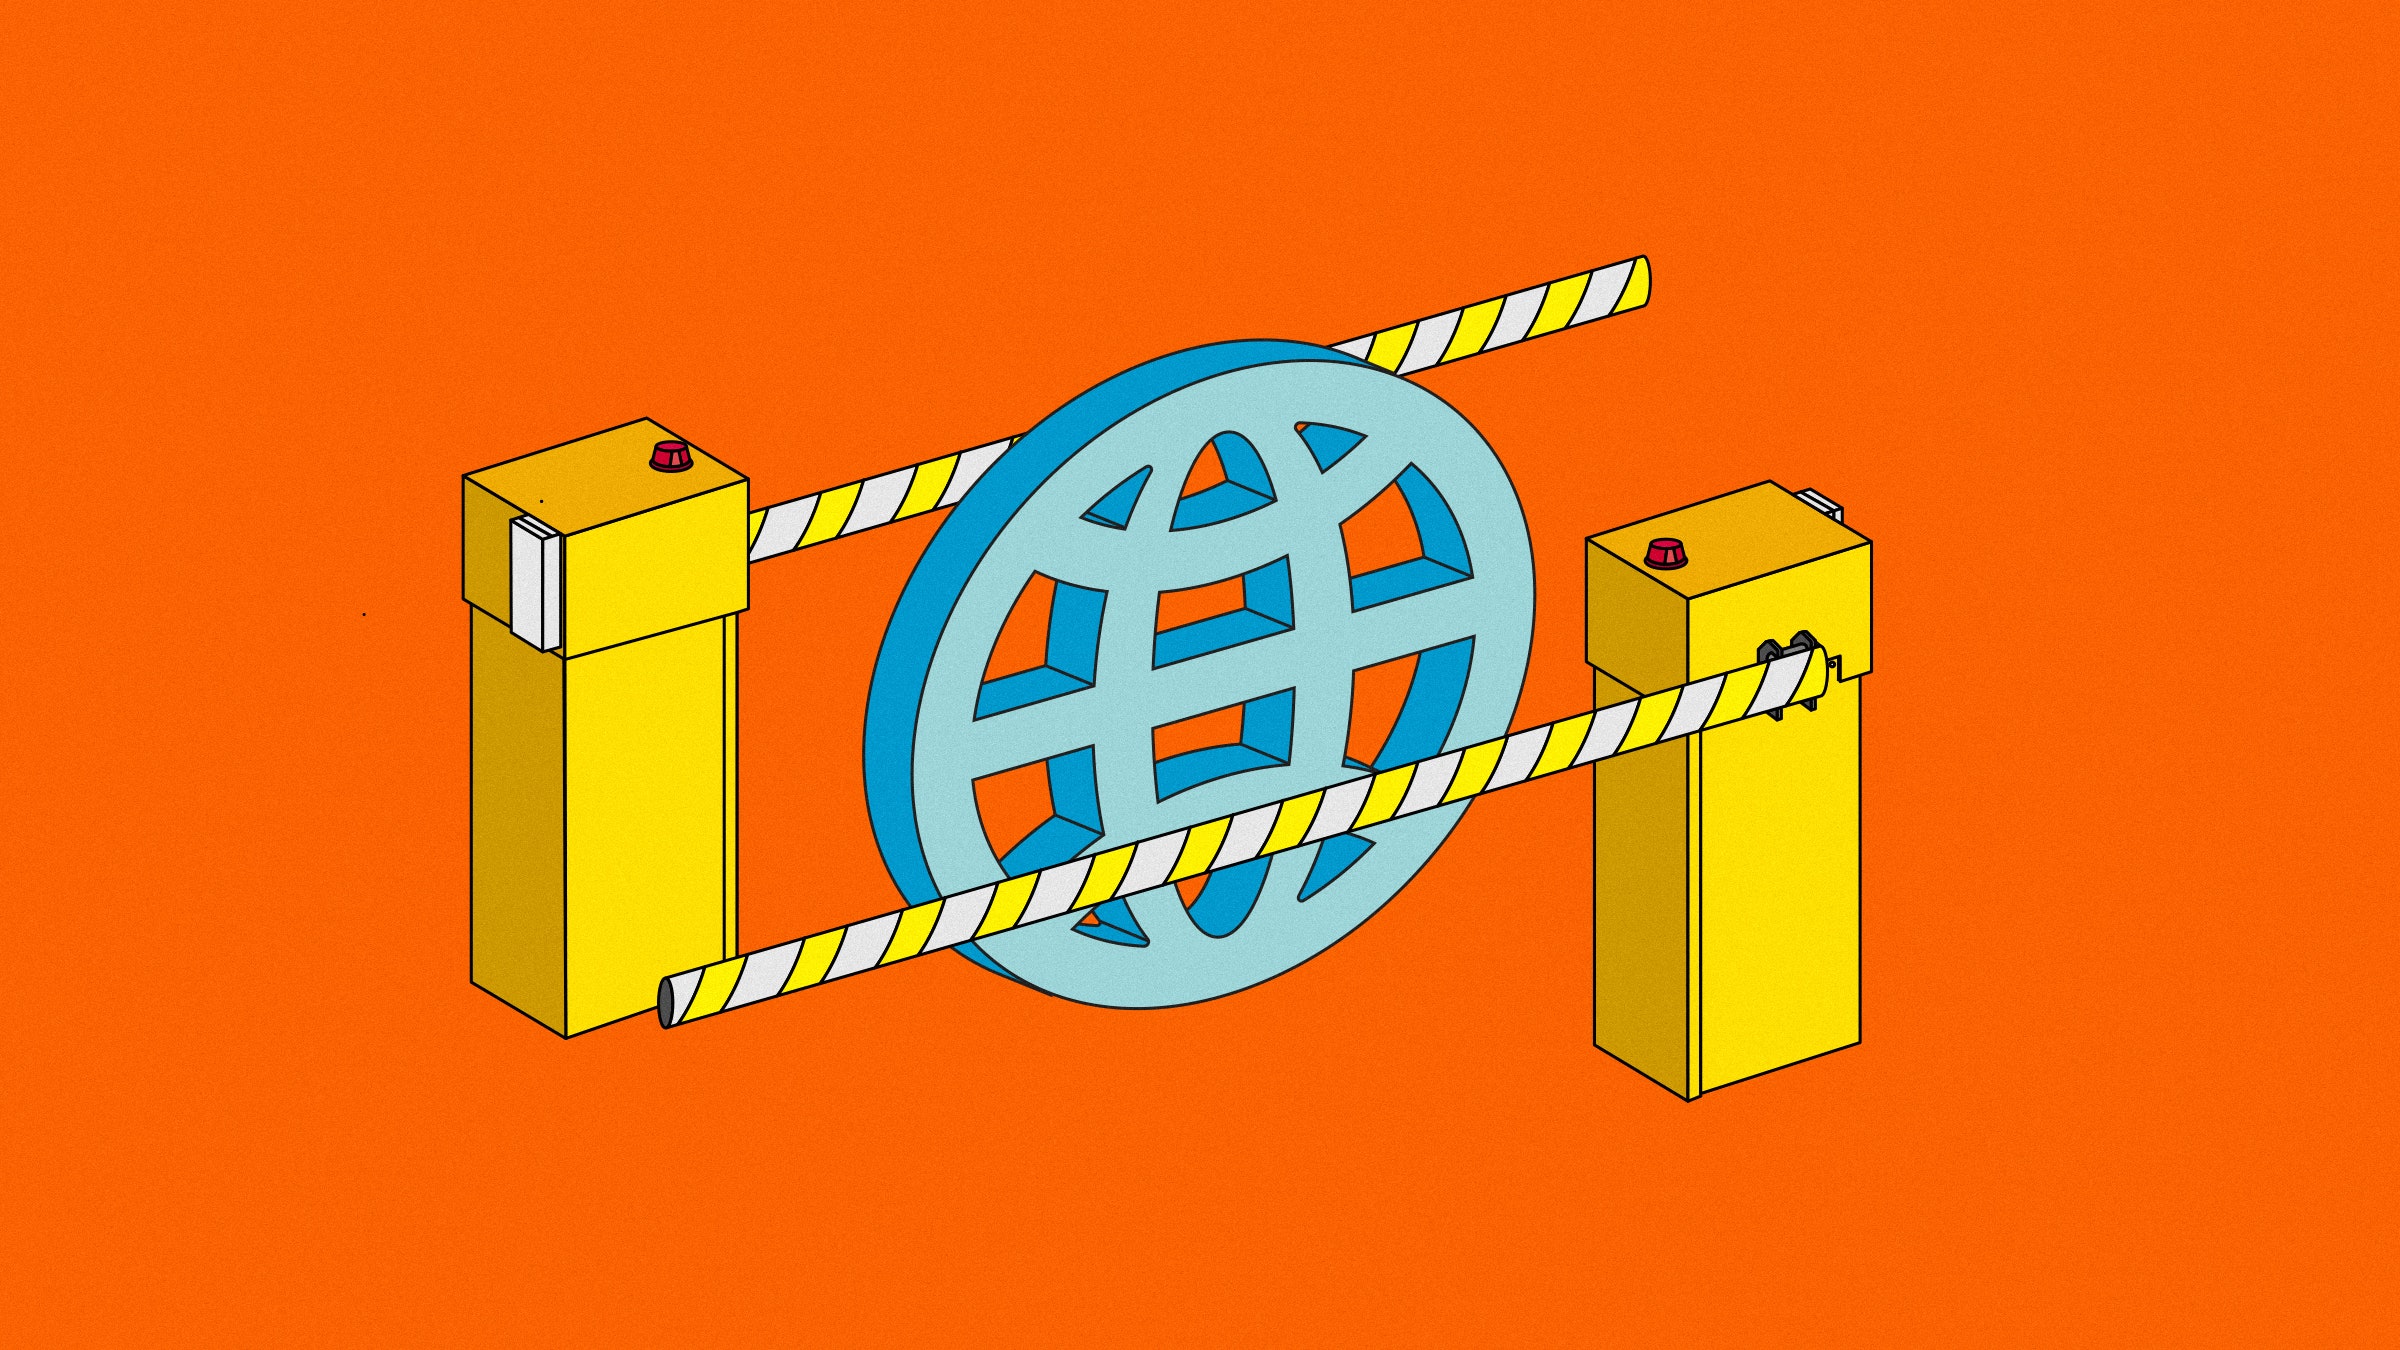 Ilustração do símbolo da rede mundial entre bloqueios de estrada